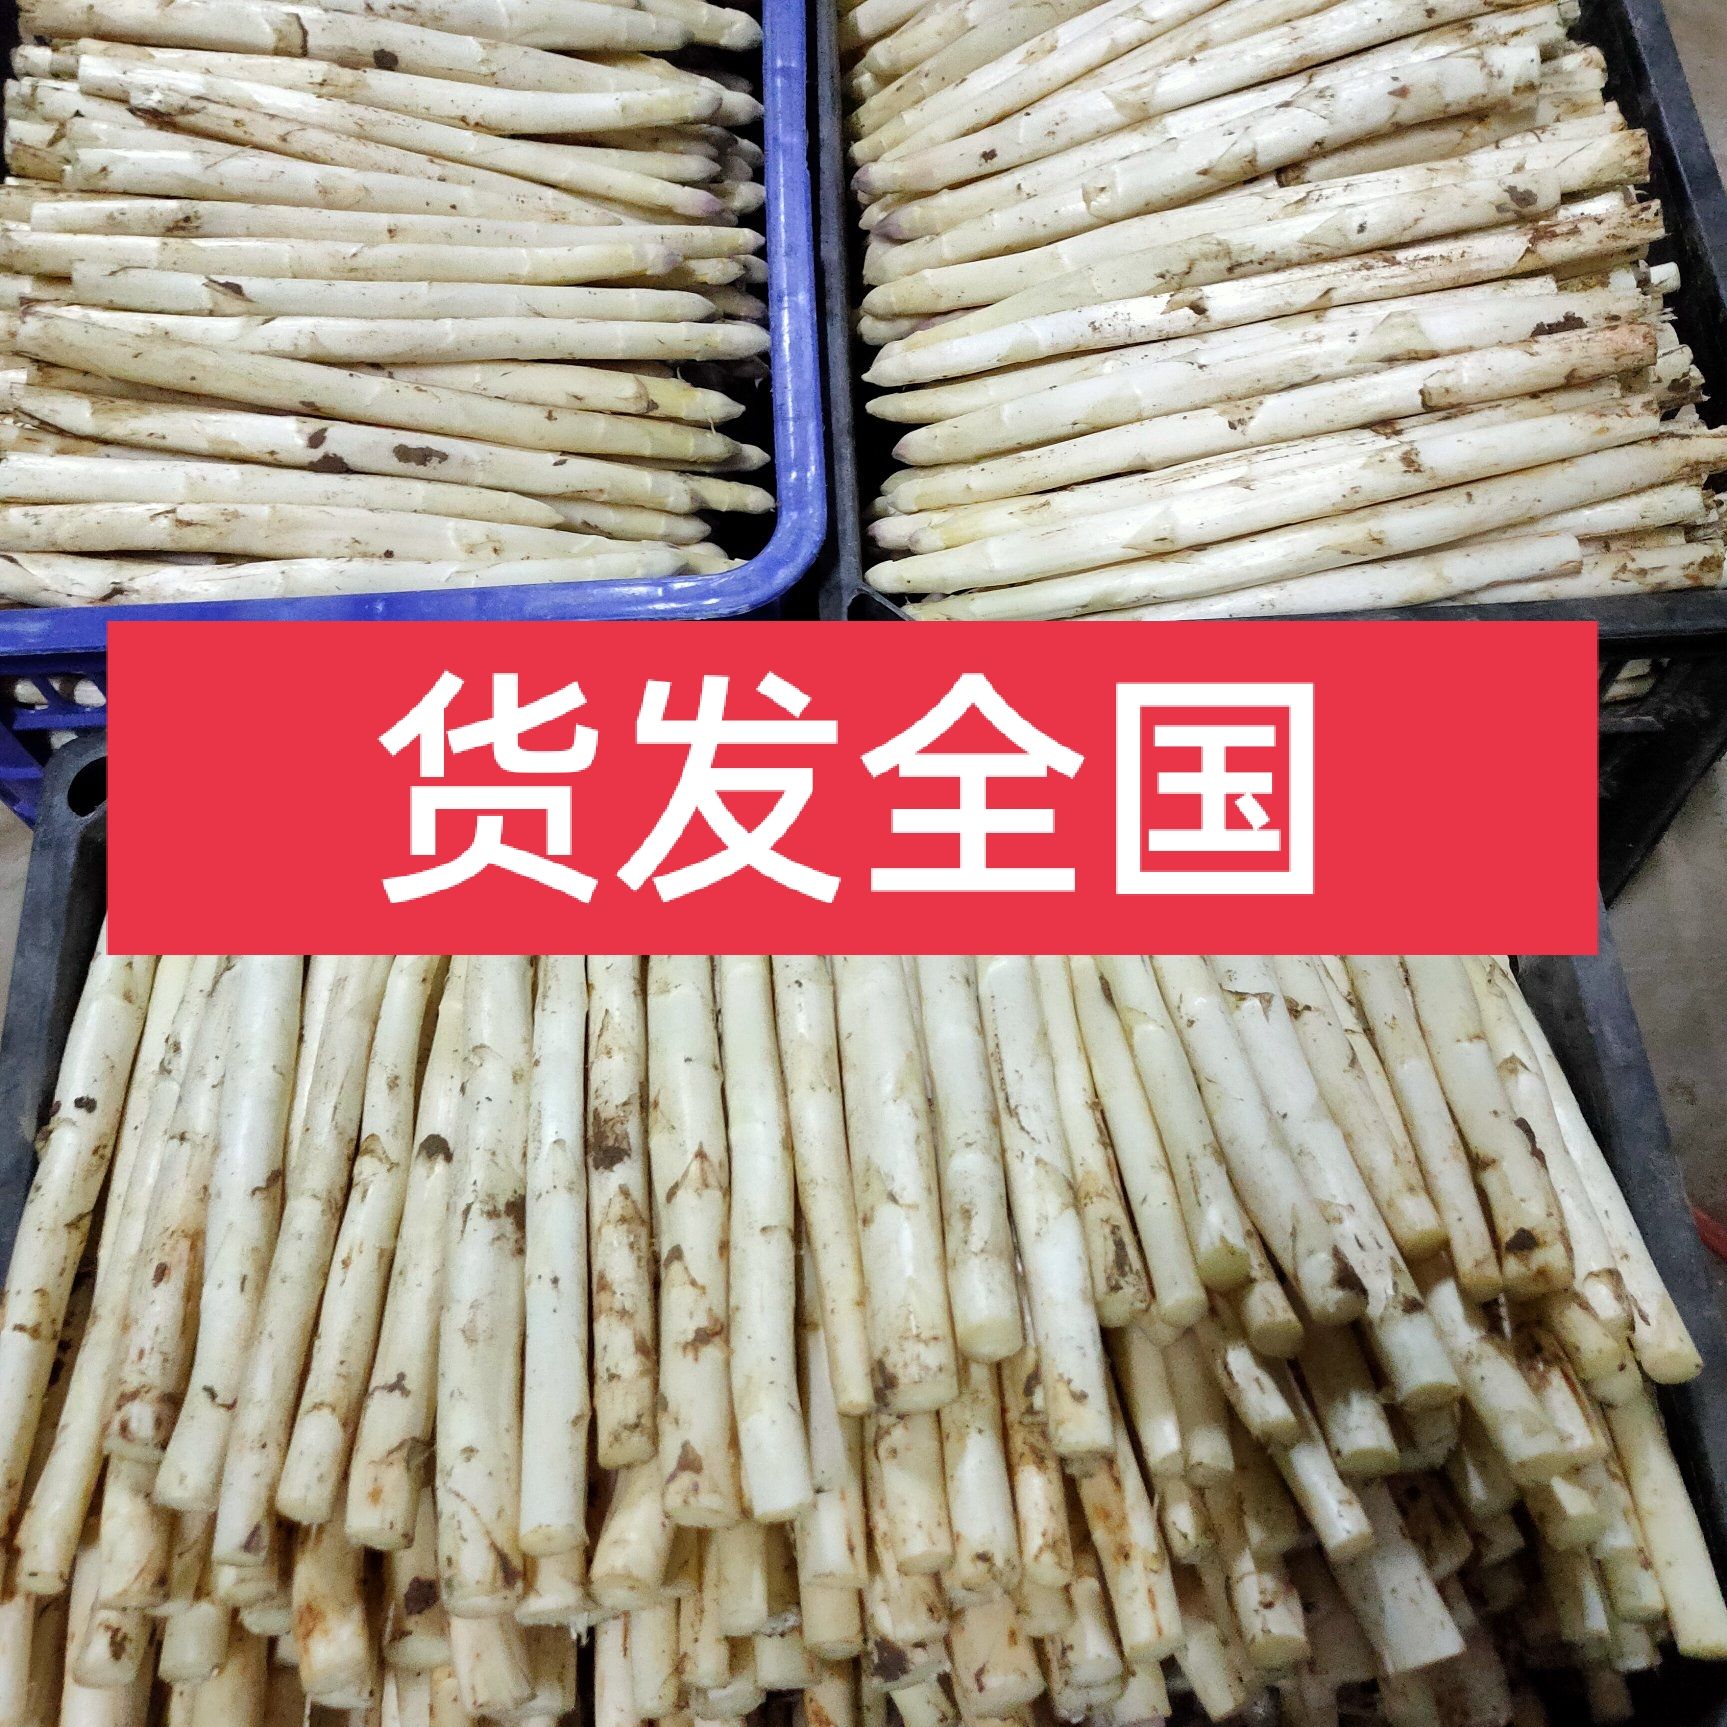 安丘市山东潍坊特产，白芦笋烧锅炉生长的白芦笋反季节上市了。